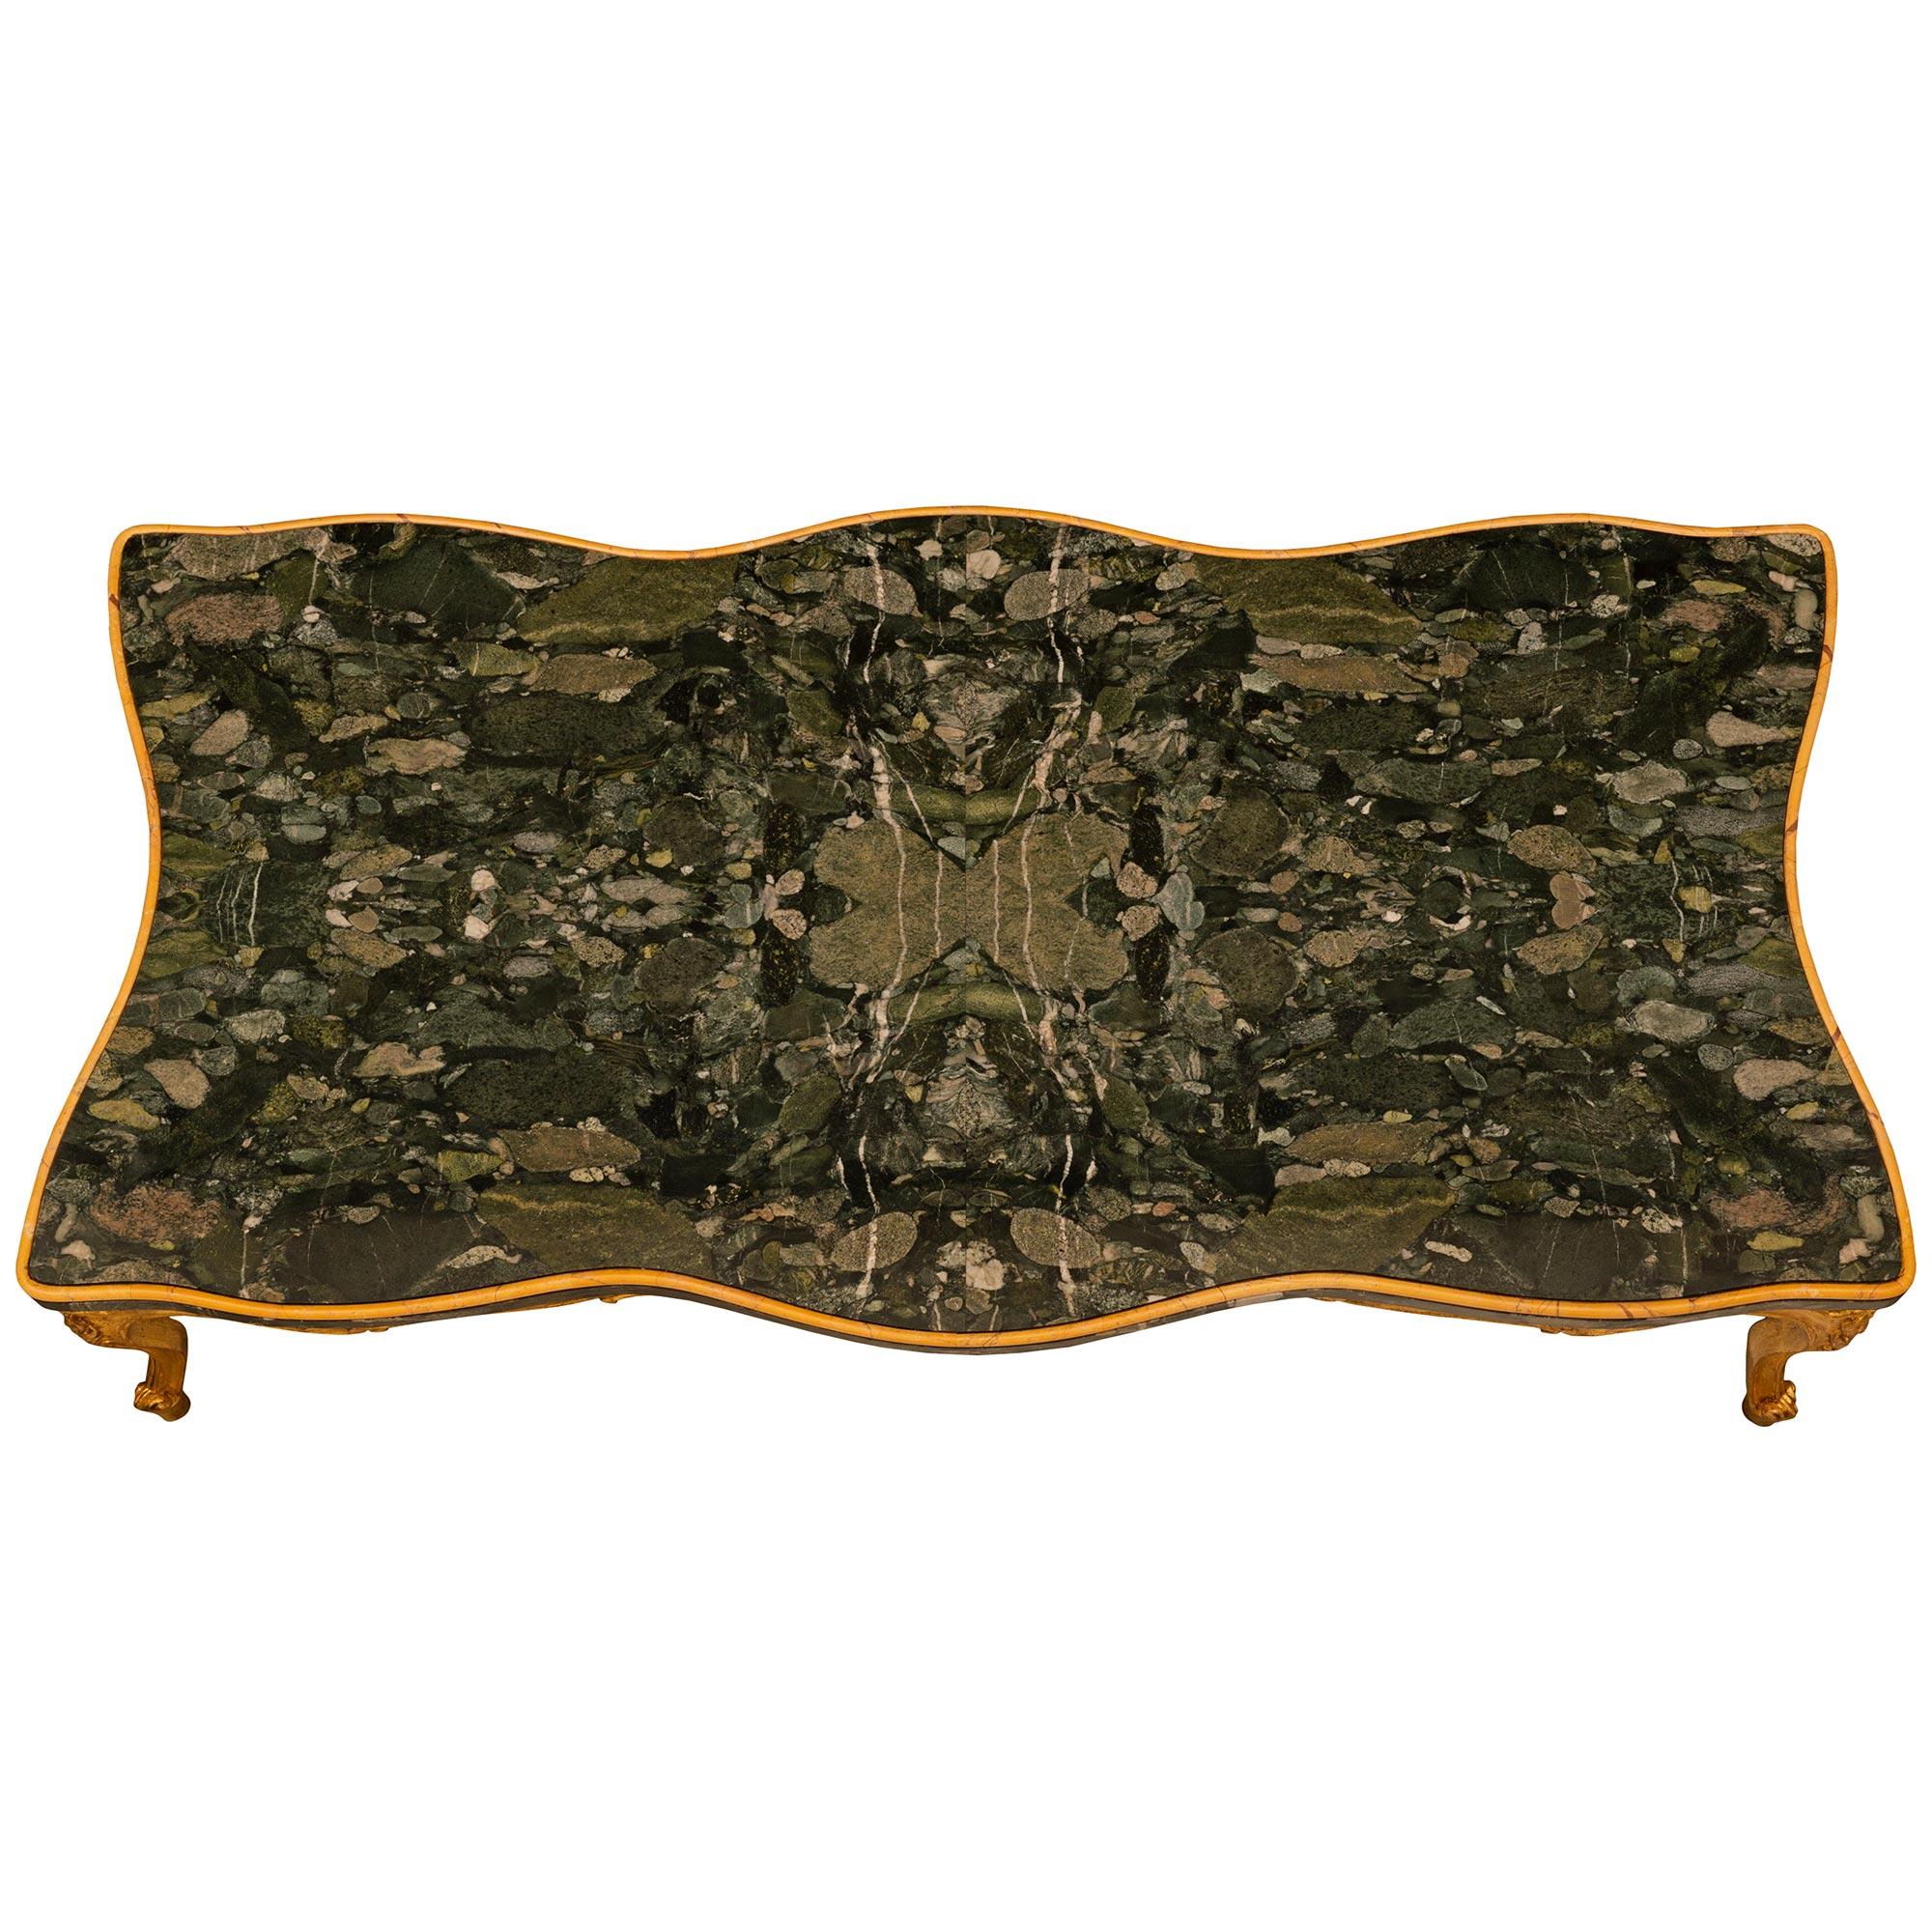 Charmante table basse en bois doré, marbre de Sienne et marbre Breccia Pavonazza de style Louis XV italien du 19e siècle, finement détaillée. Cette magnifique table repose sur quatre pieds cabriole en bois doré à volutes, chaque pied étant surmonté